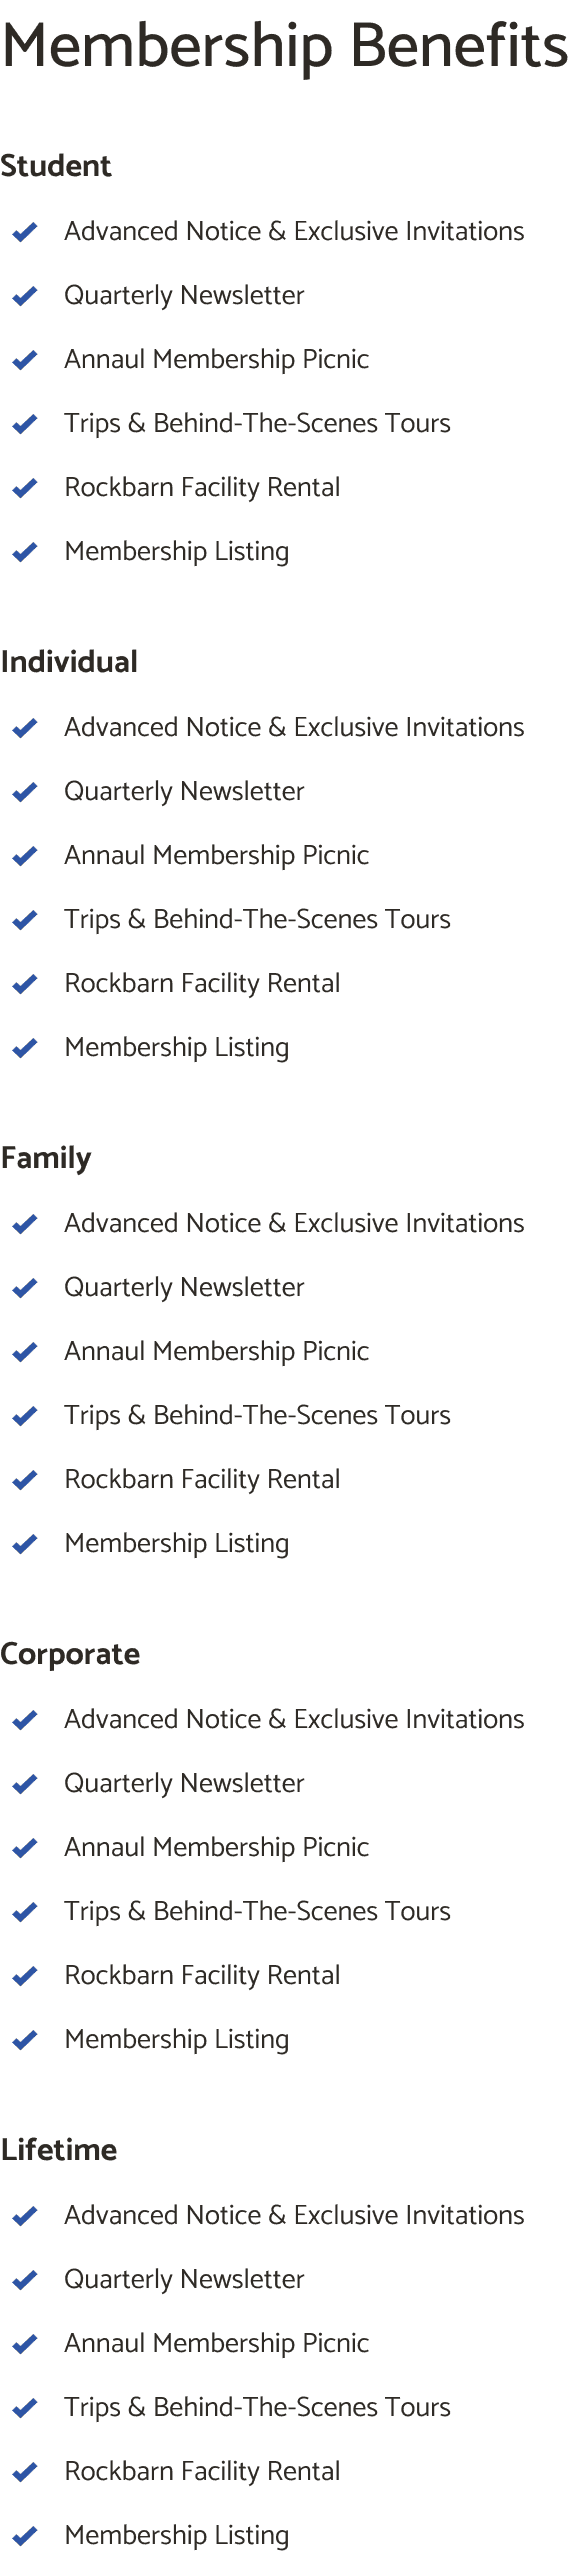 Current Member Levels & Benefits